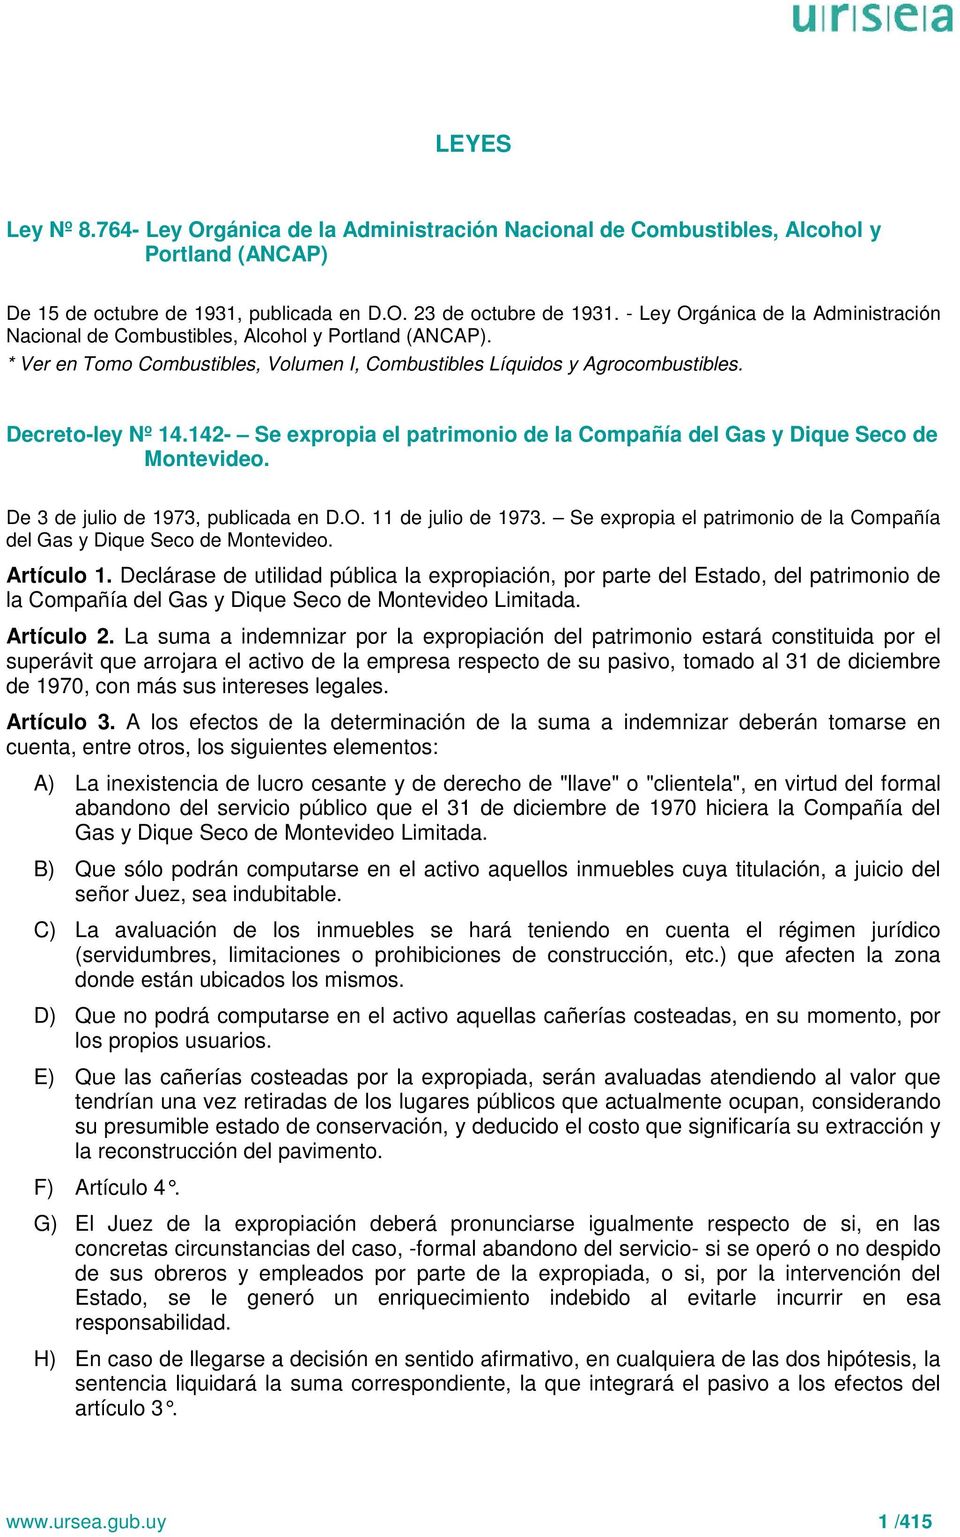 142- Se expropia el patrimonio de la Compañía del Gas y Dique Seco de Montevideo. De 3 de julio de 1973, publicada en D.O. 11 de julio de 1973.